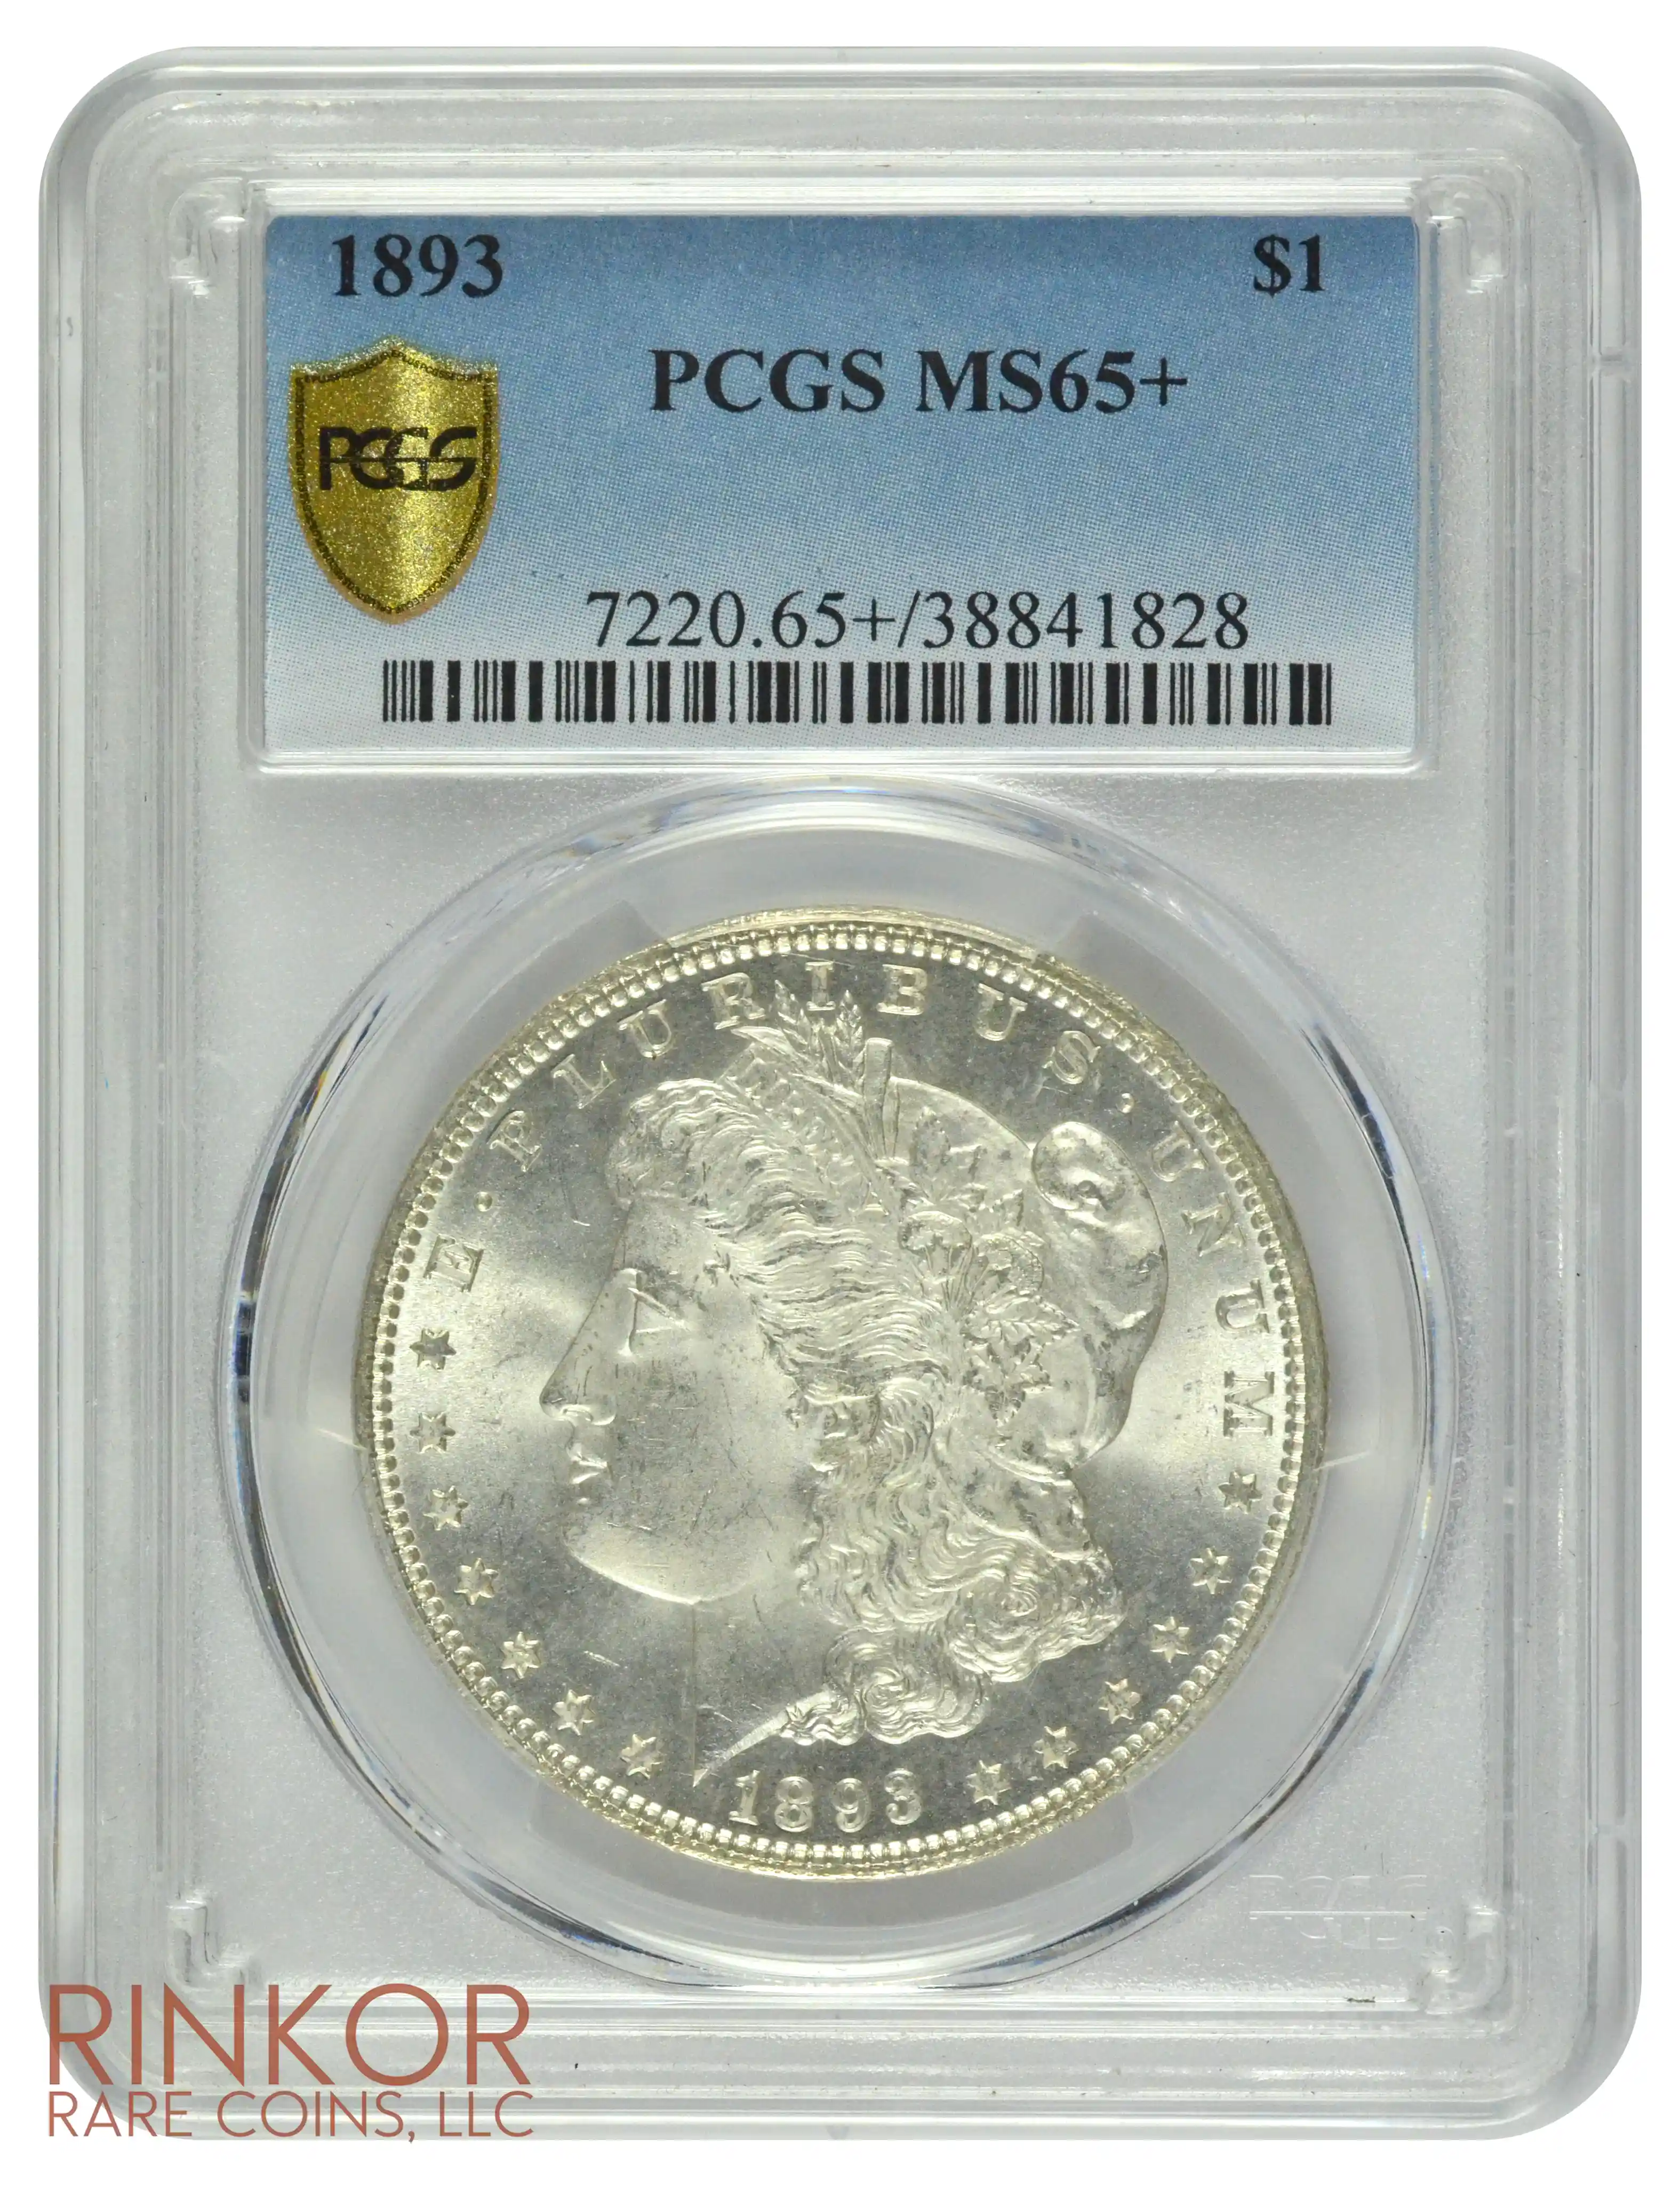 1893 $1 PCGS MS 65+